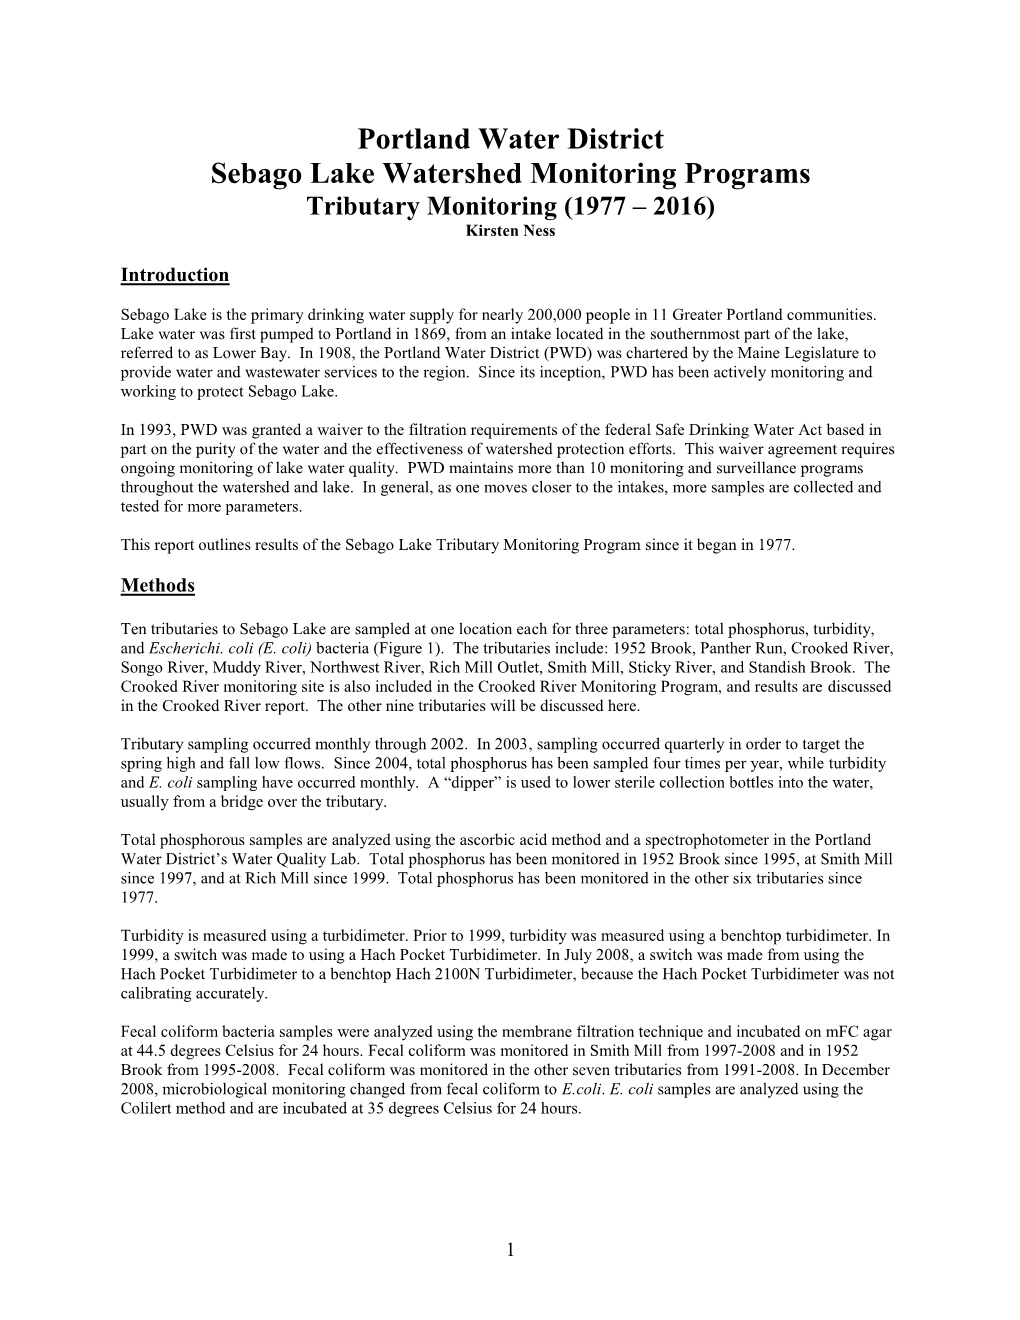 Sebago Lake Monitoring Results for 2003